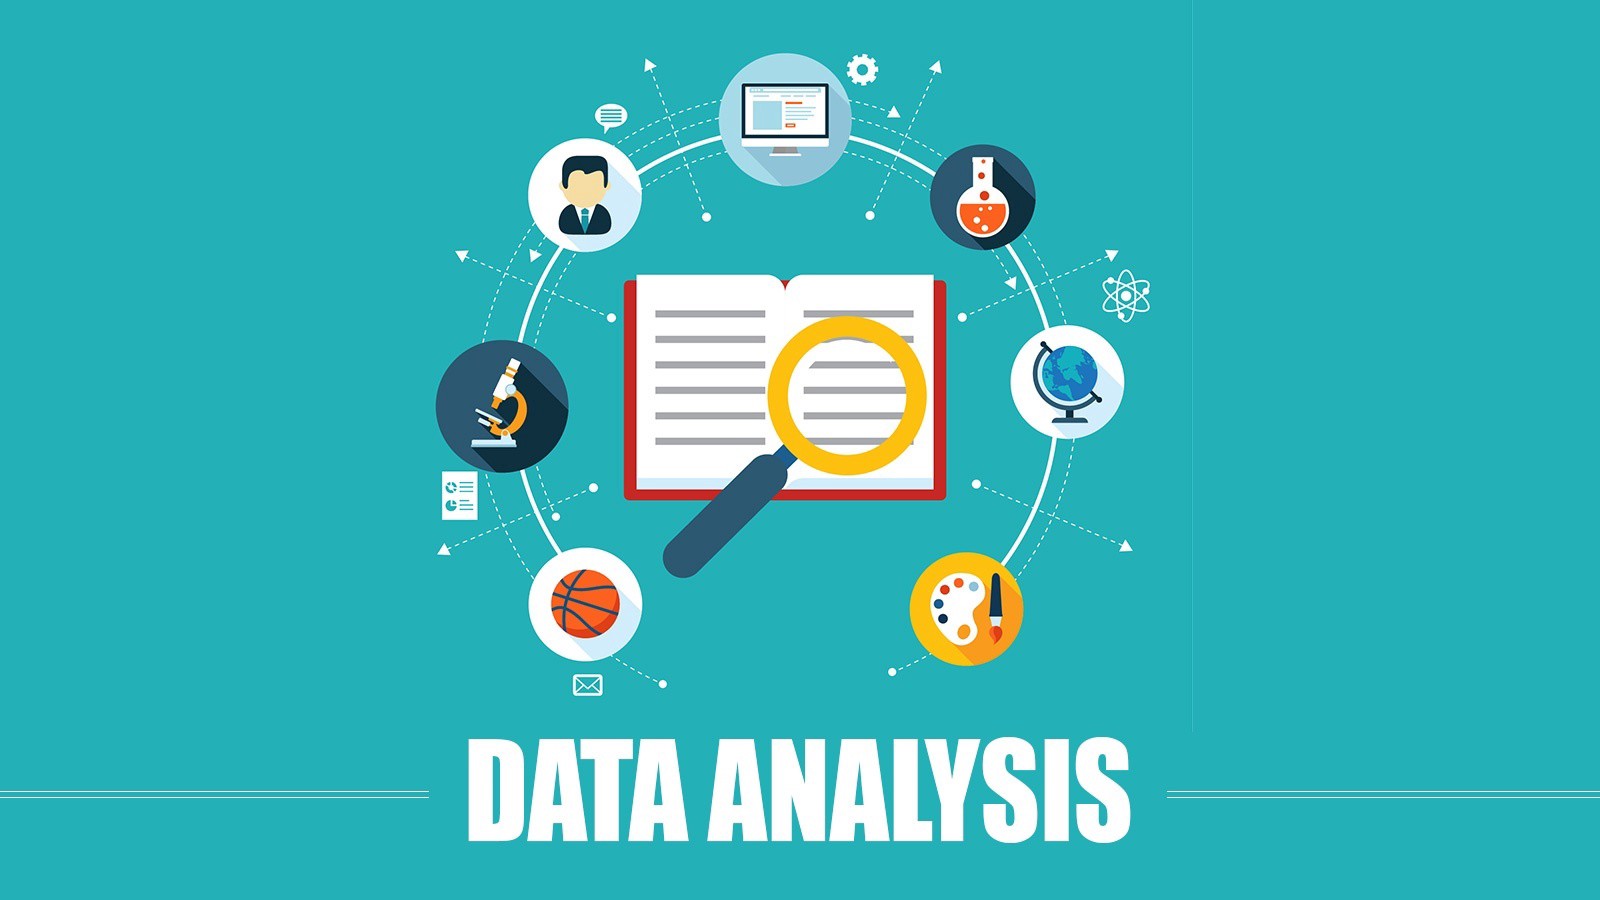 Data Analyst là nhà phân tích dữ liệu có vai trò quan trọng trong ngành Khoa học dữ liệu